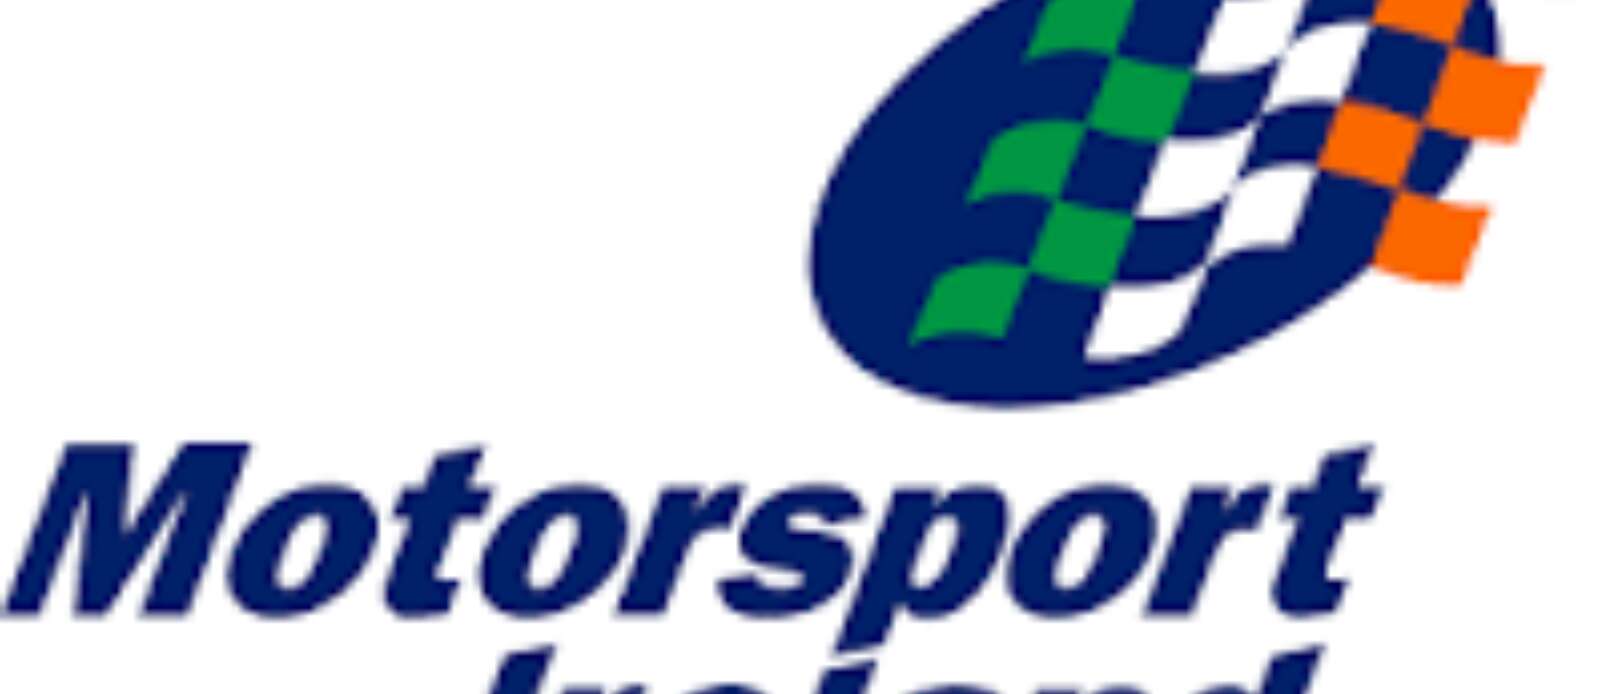 Motorsport Manager Header Image.